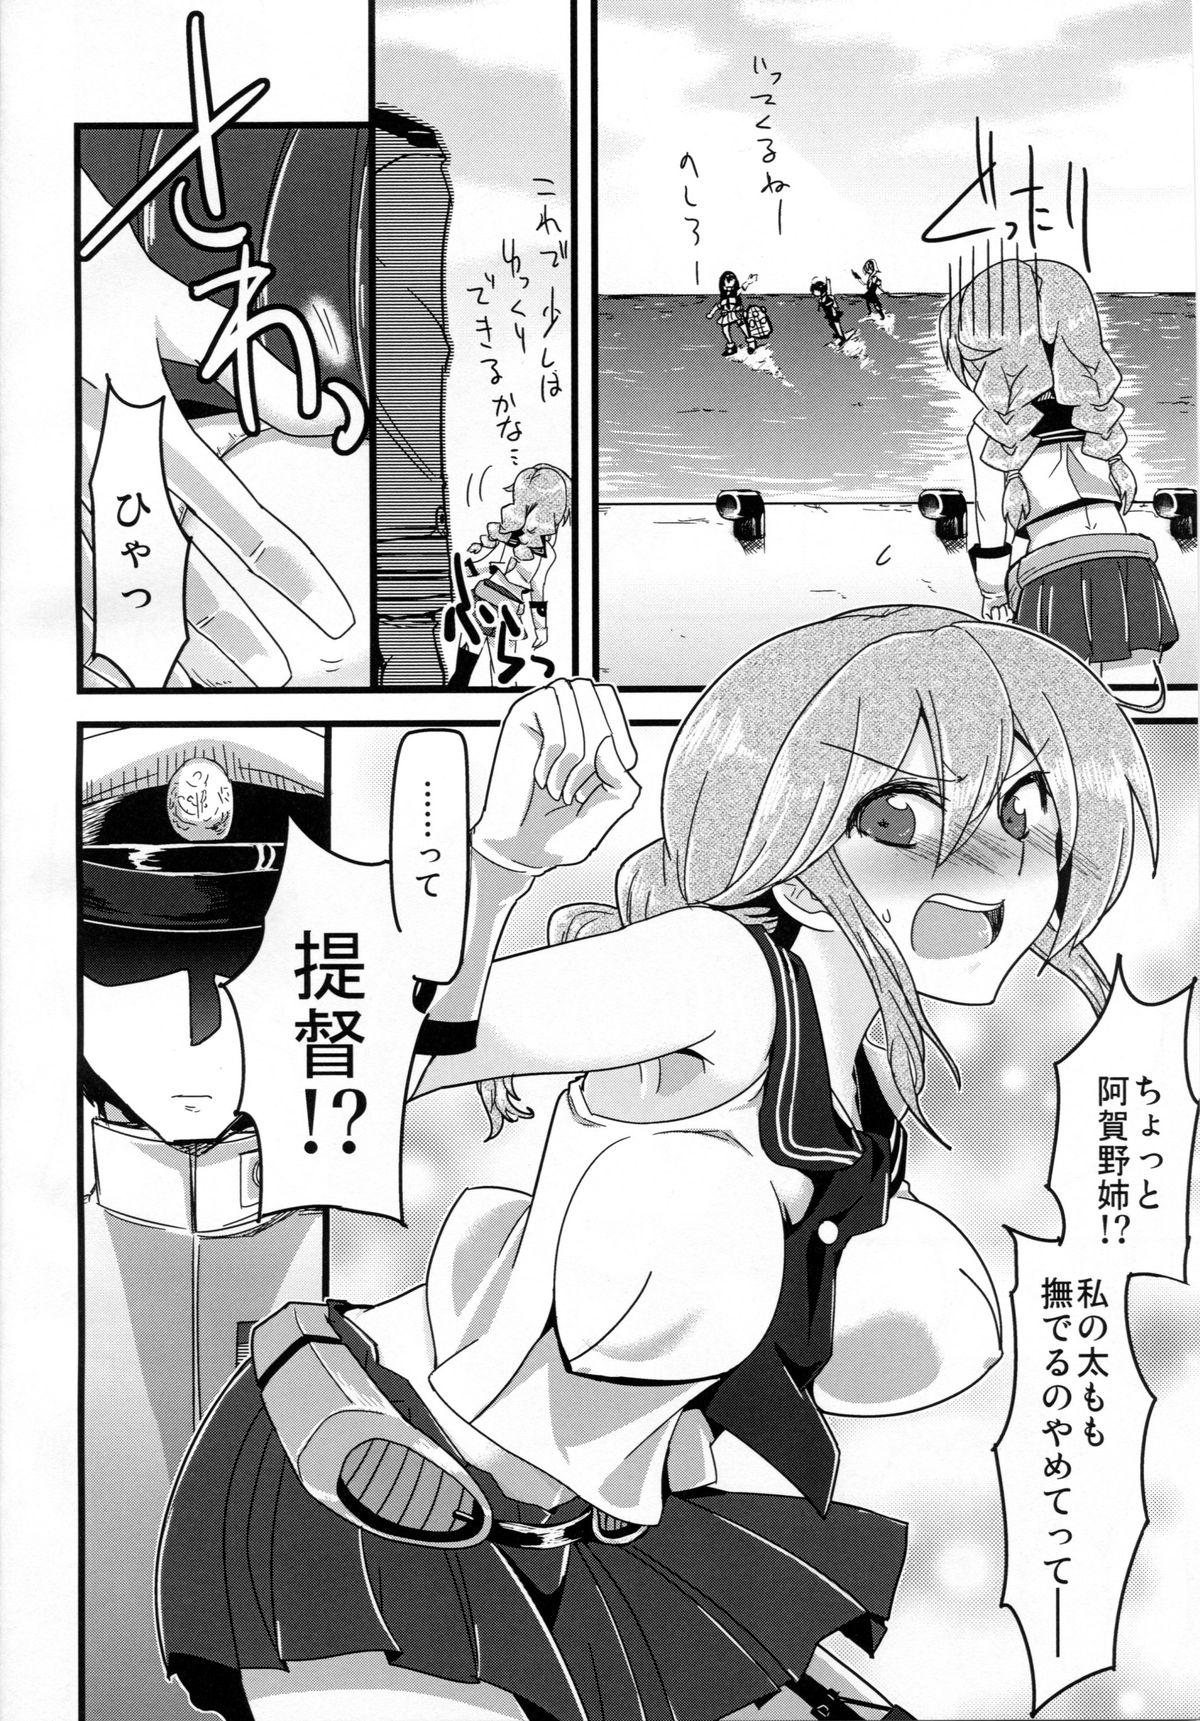 Perverted Hai! Teitoku Noshiro, Oyobi desu ka? - Kantai collection Group - Page 4